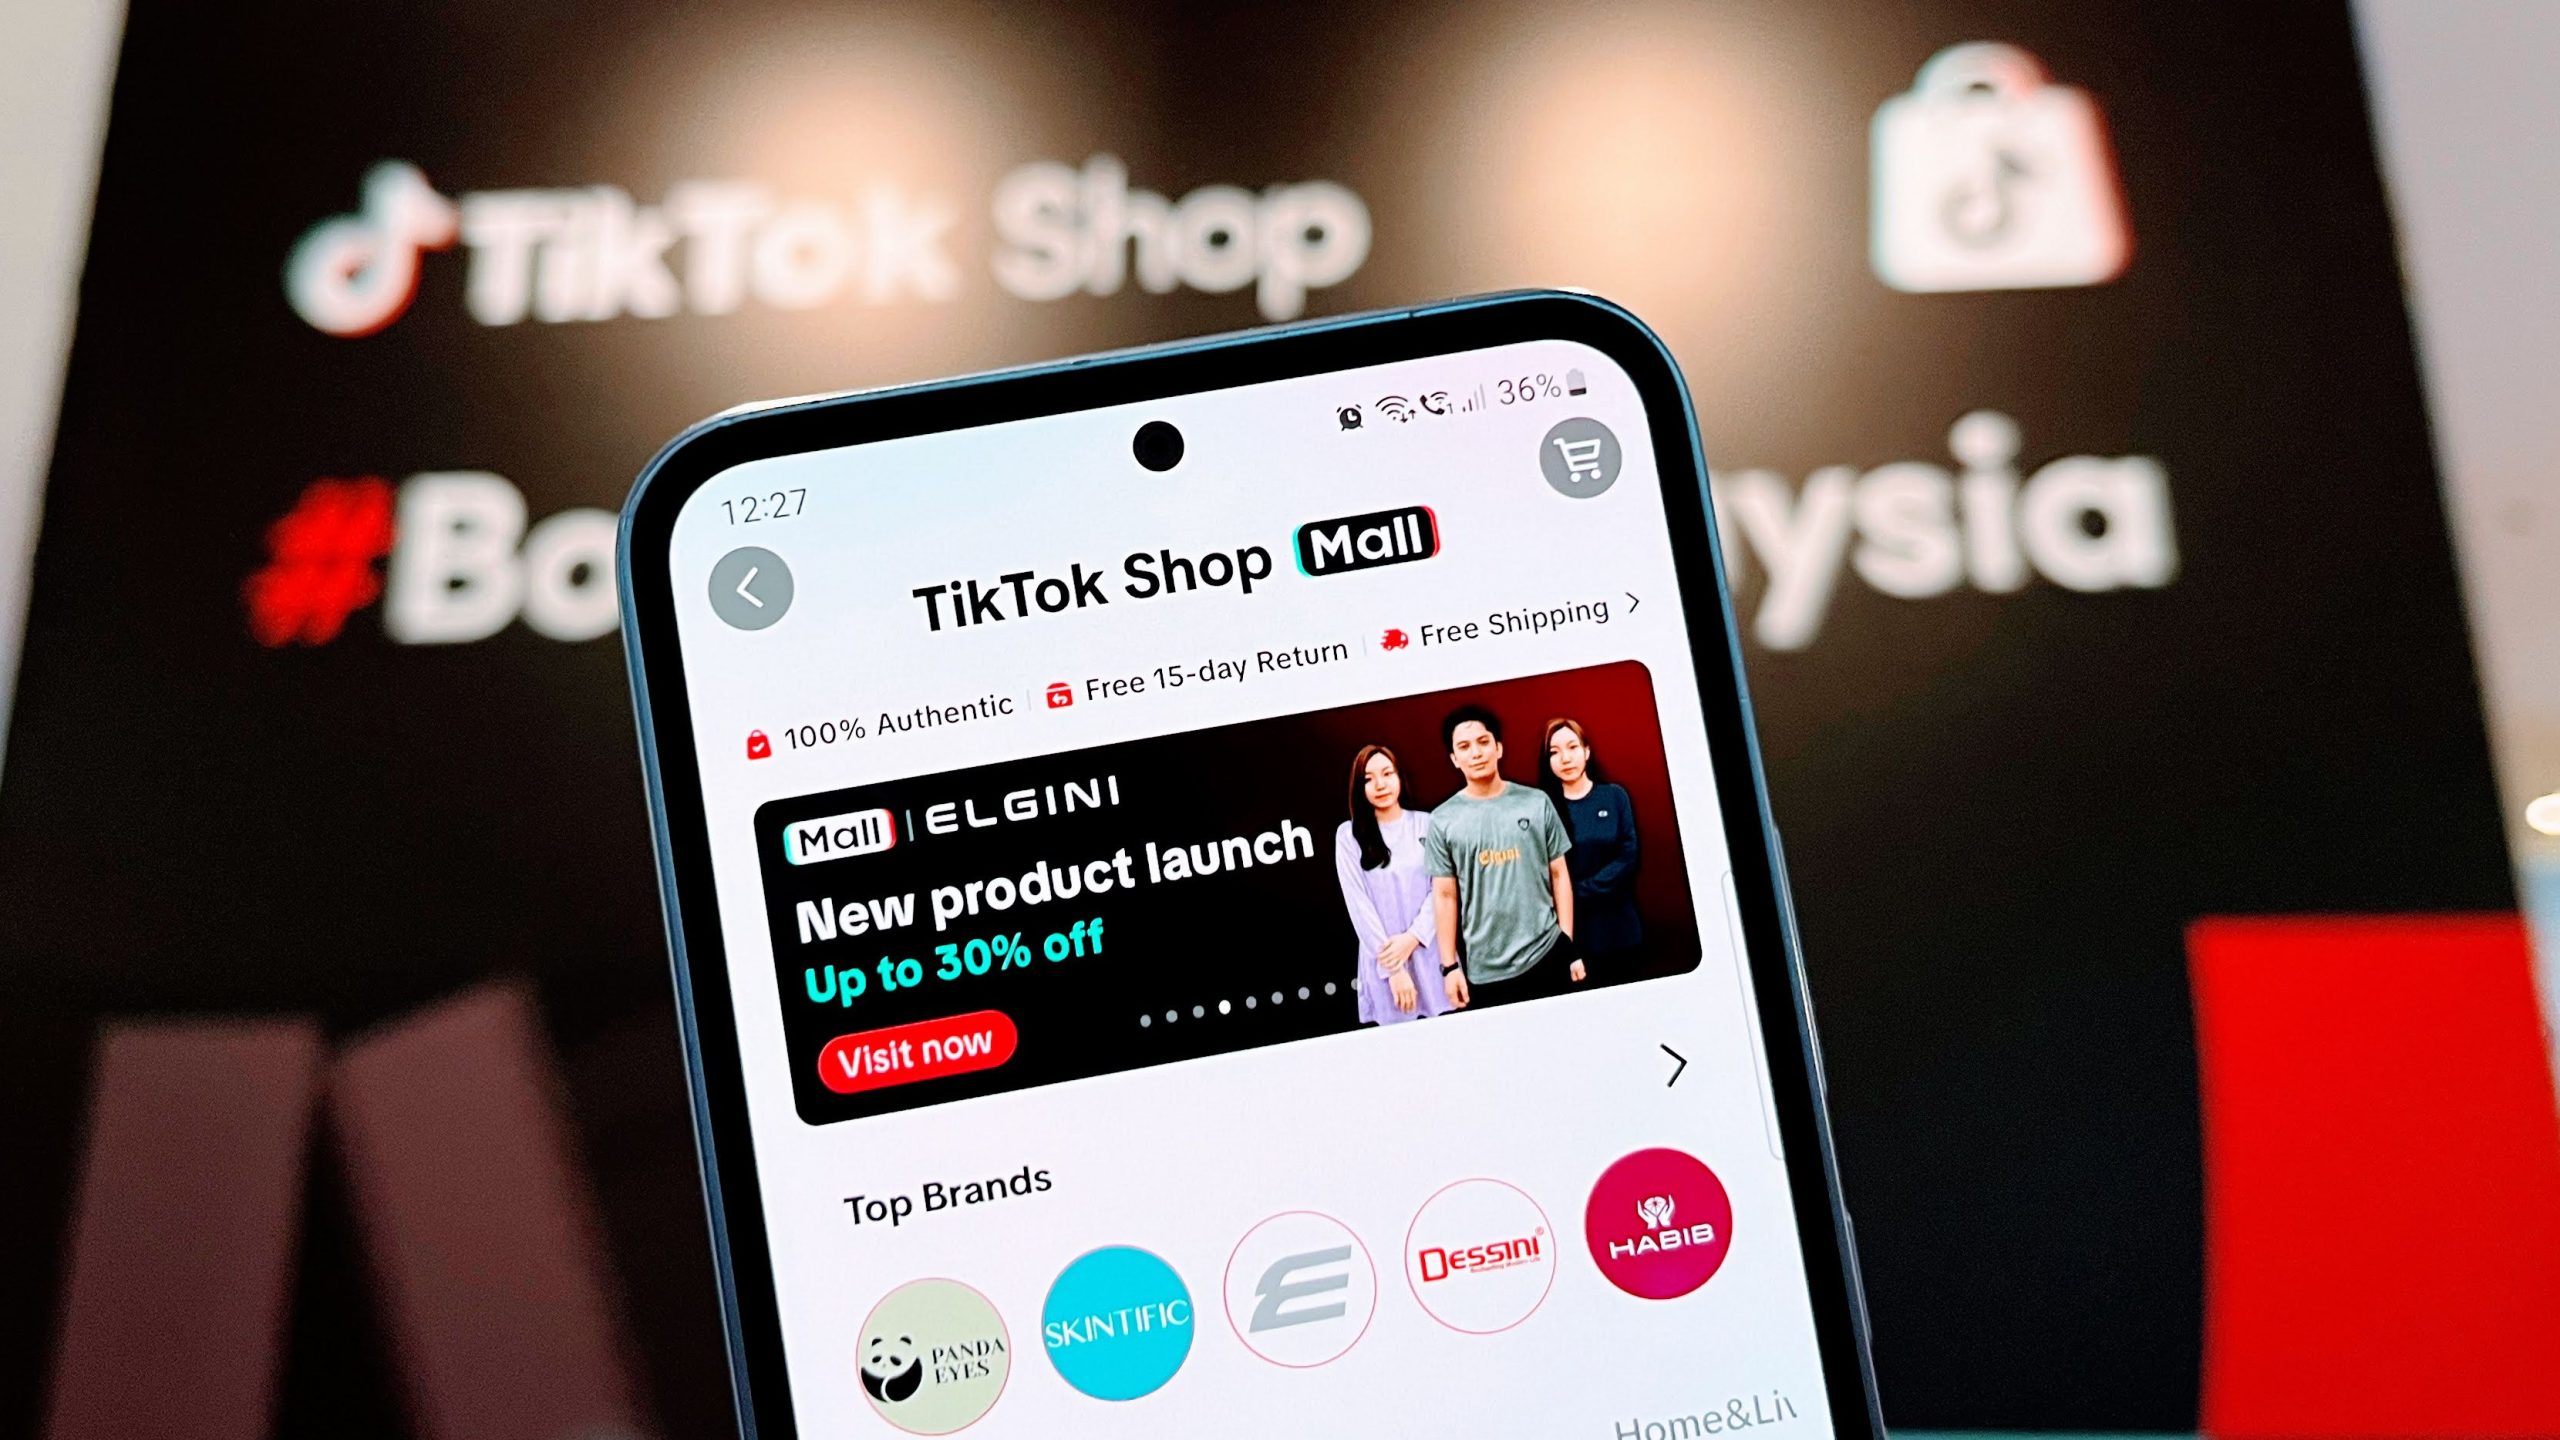 TikTok Shop Mall Diperkenalkan Di Malaysia – Beli Terus Dari Kedai Jenama Rasmi